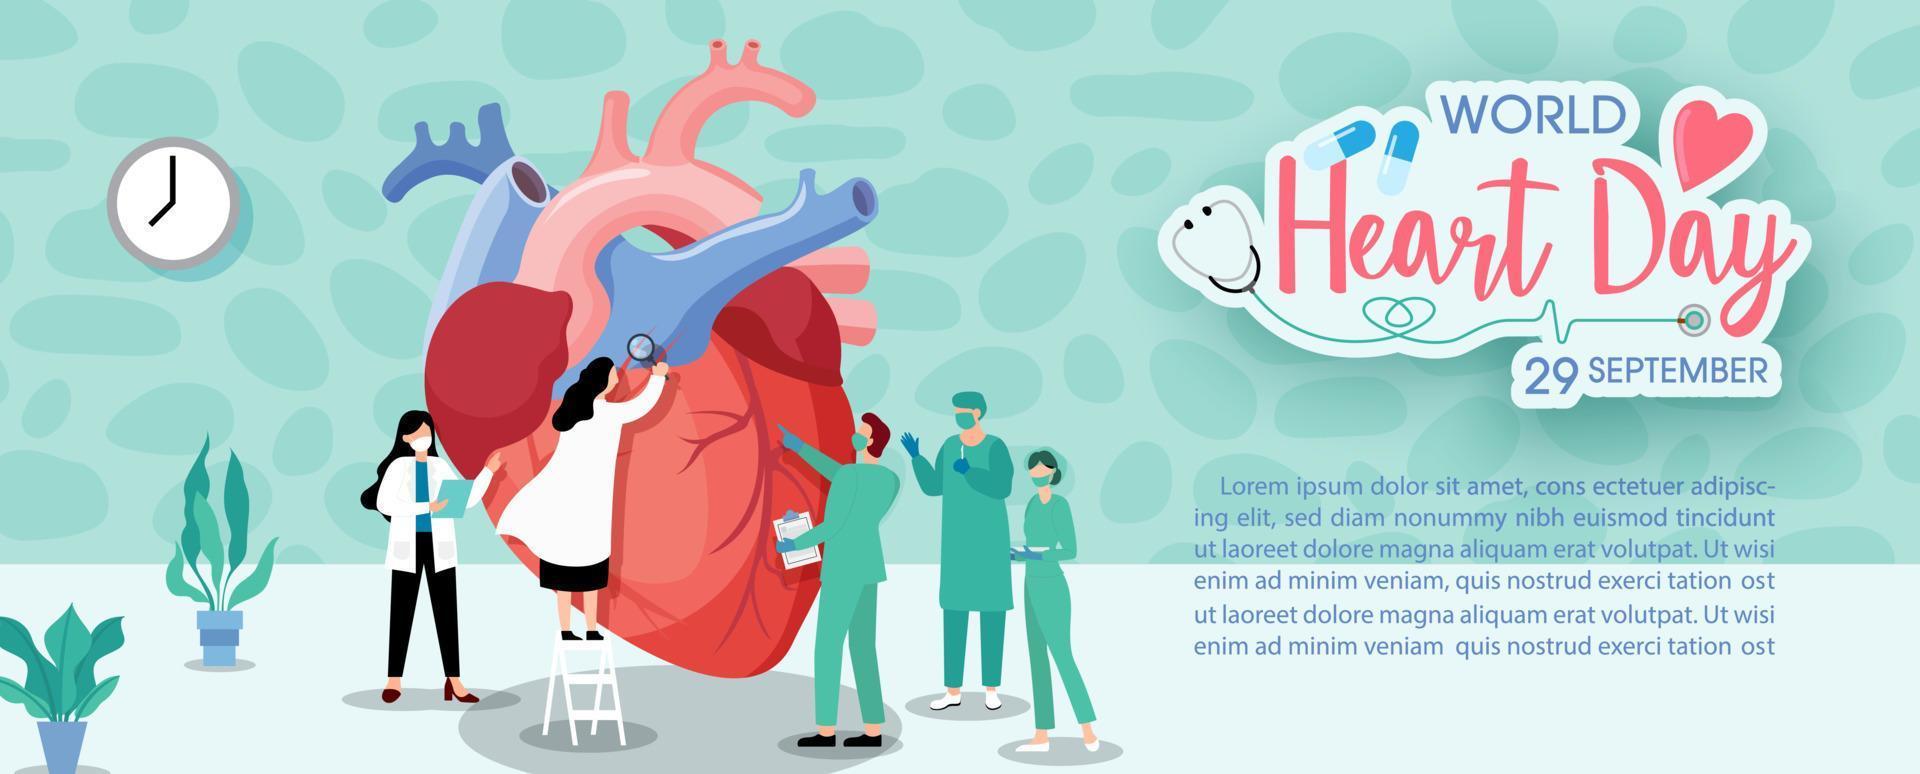 conceito de campanha de cartaz do dia mundial do coração no tratamento de personagens de desenho animado e conscientização sobre cuidados de saúde e design plano em 29 de setembro. vetor